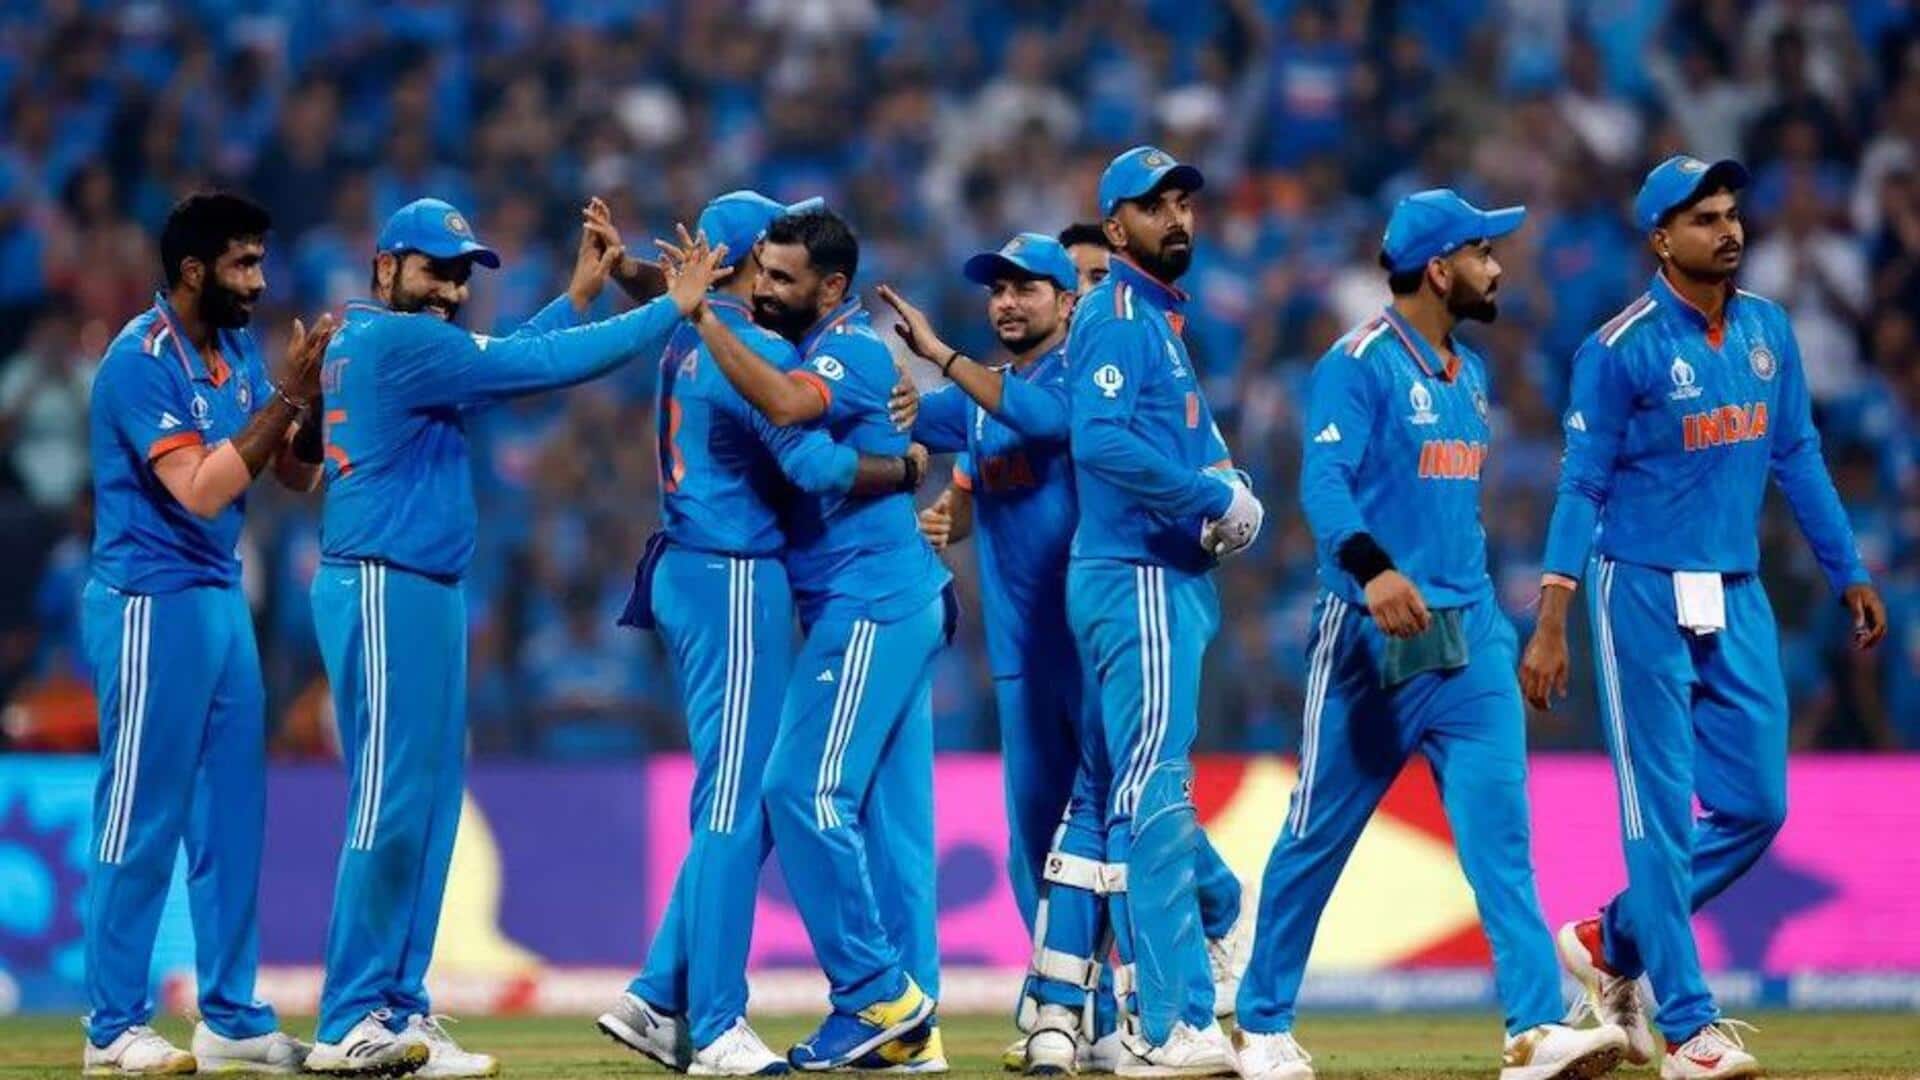 India in ODI World Cup Finals: ஒருநாள் உலகக்கோப்பை இறுதிப்போட்டிகளில் இந்திய அணியின் செயல்திறன்